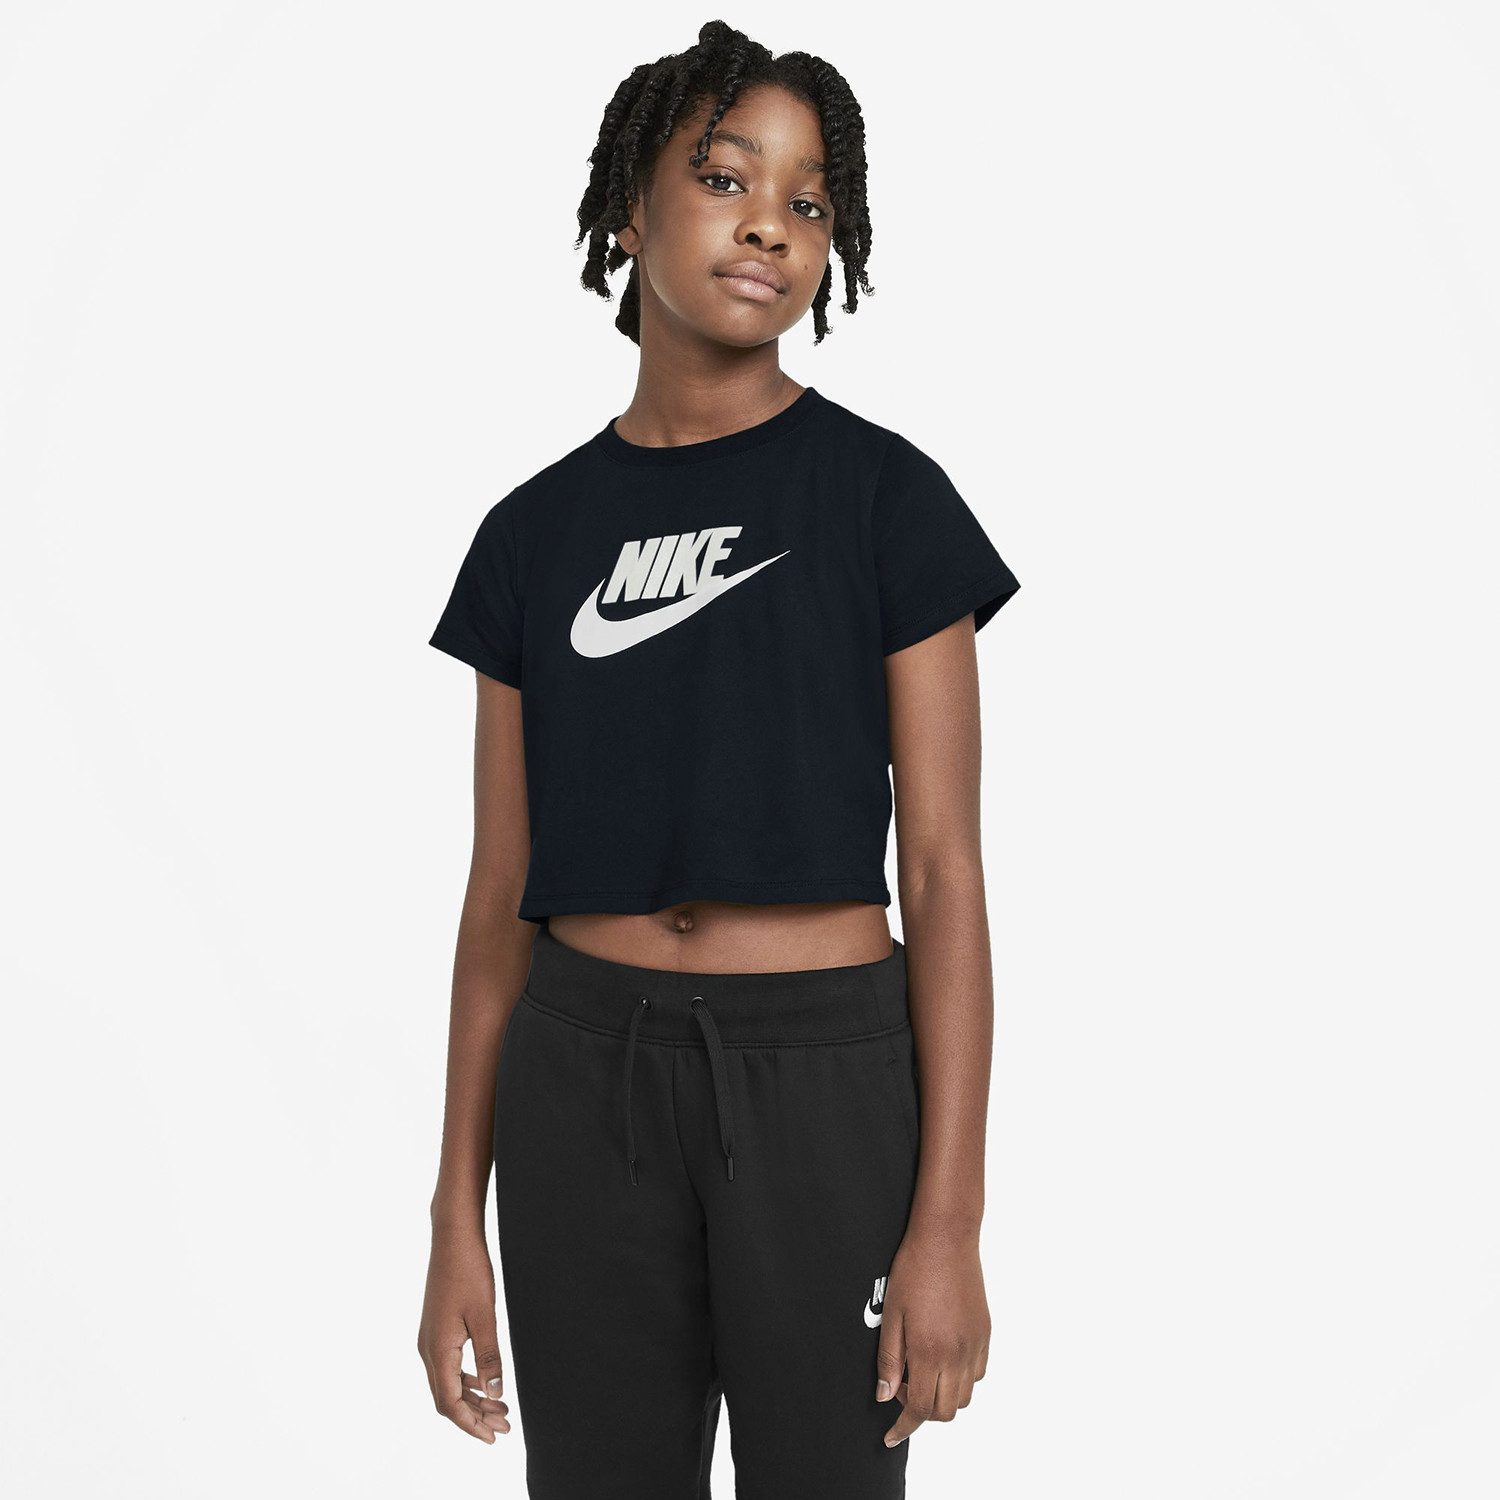 Nike Crop Top Futura Î Î±Î¹Î´Î¹ÎºÏŒ T-Shirt (9000076866_1469)